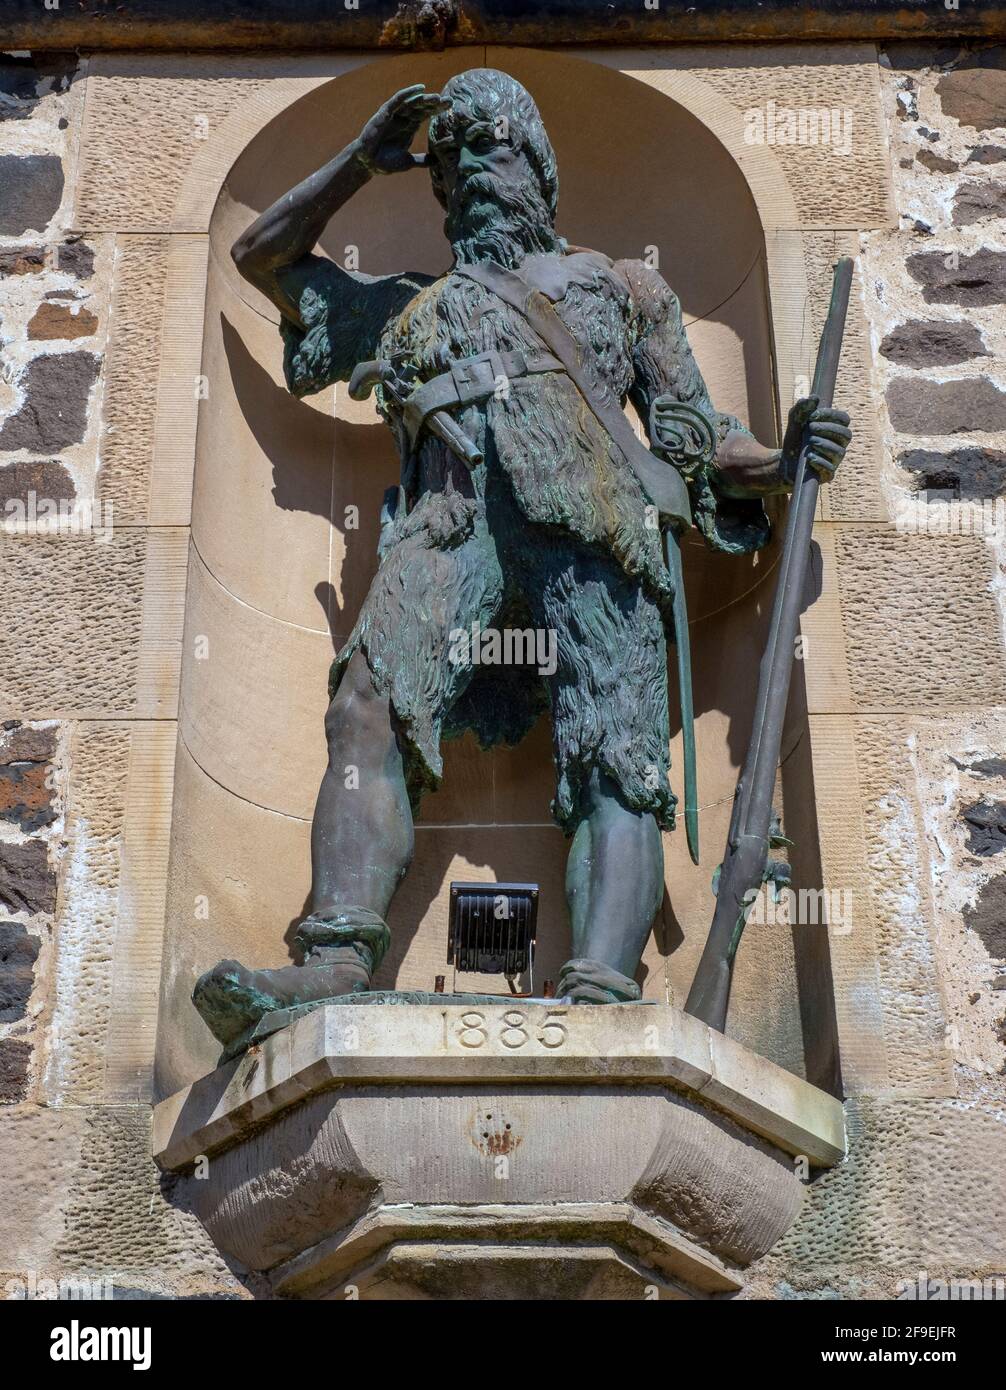 La statua di Robinson Crusoe in Largo inferiore, Fife. Lower Largo è famosa per i suoi legami con Alexander Selkirk, nato nel villaggio nel 1676. Foto Stock